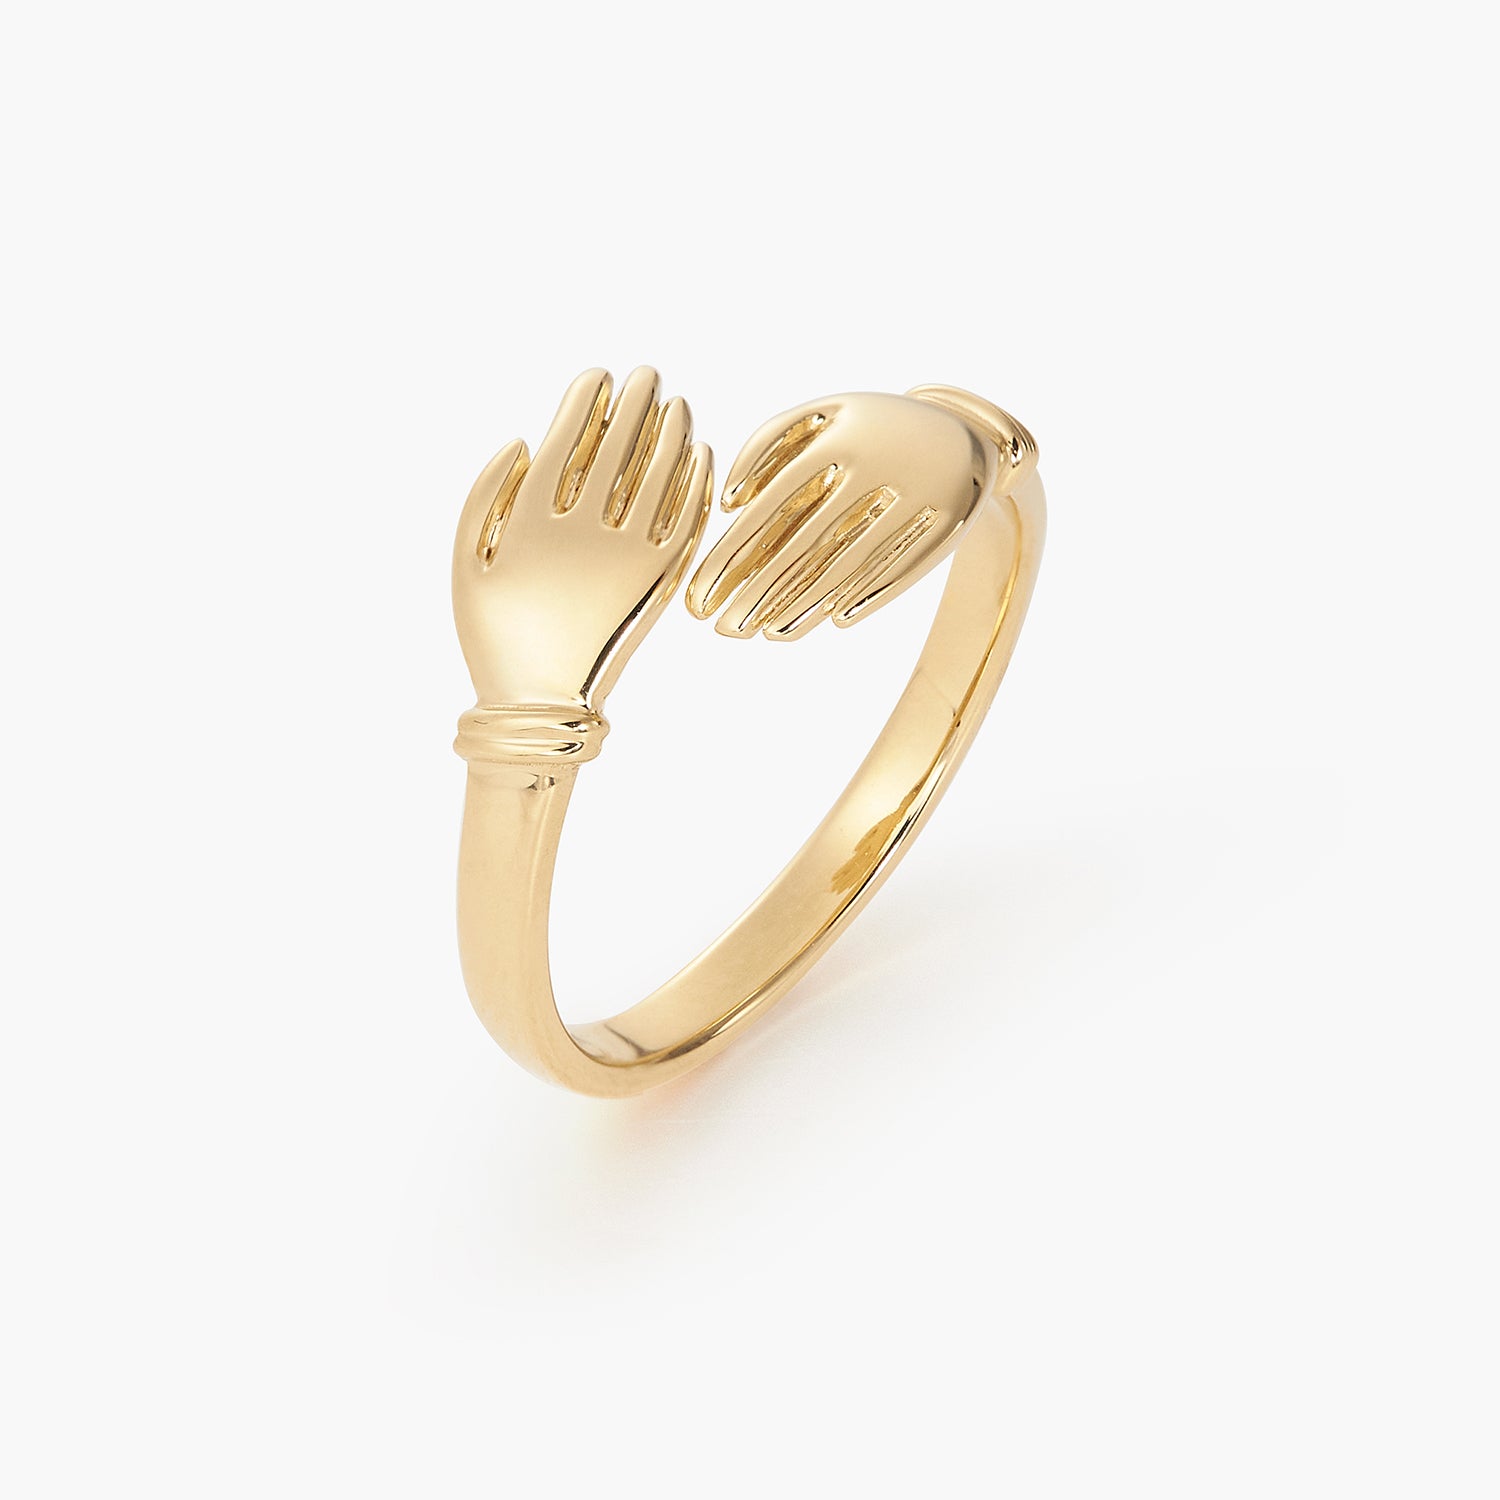 Buy Silver Linings Sun Handmade Silver Filigree Ring For Women Online –  Okhaistore